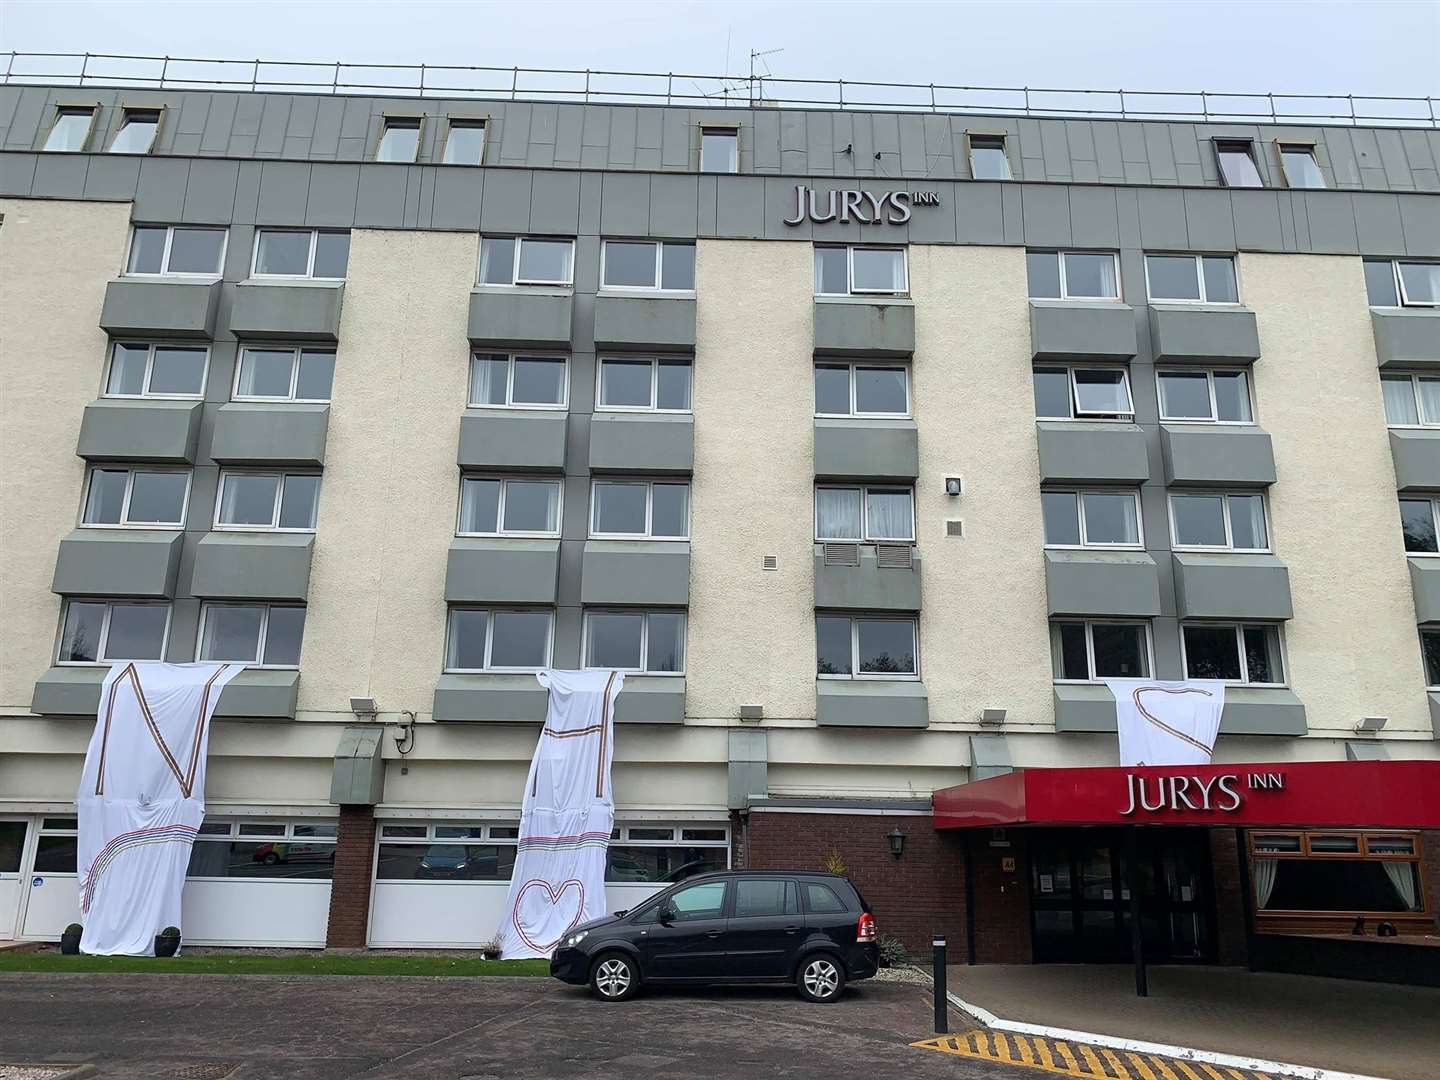 Jurys Inn send love to NHS workers.